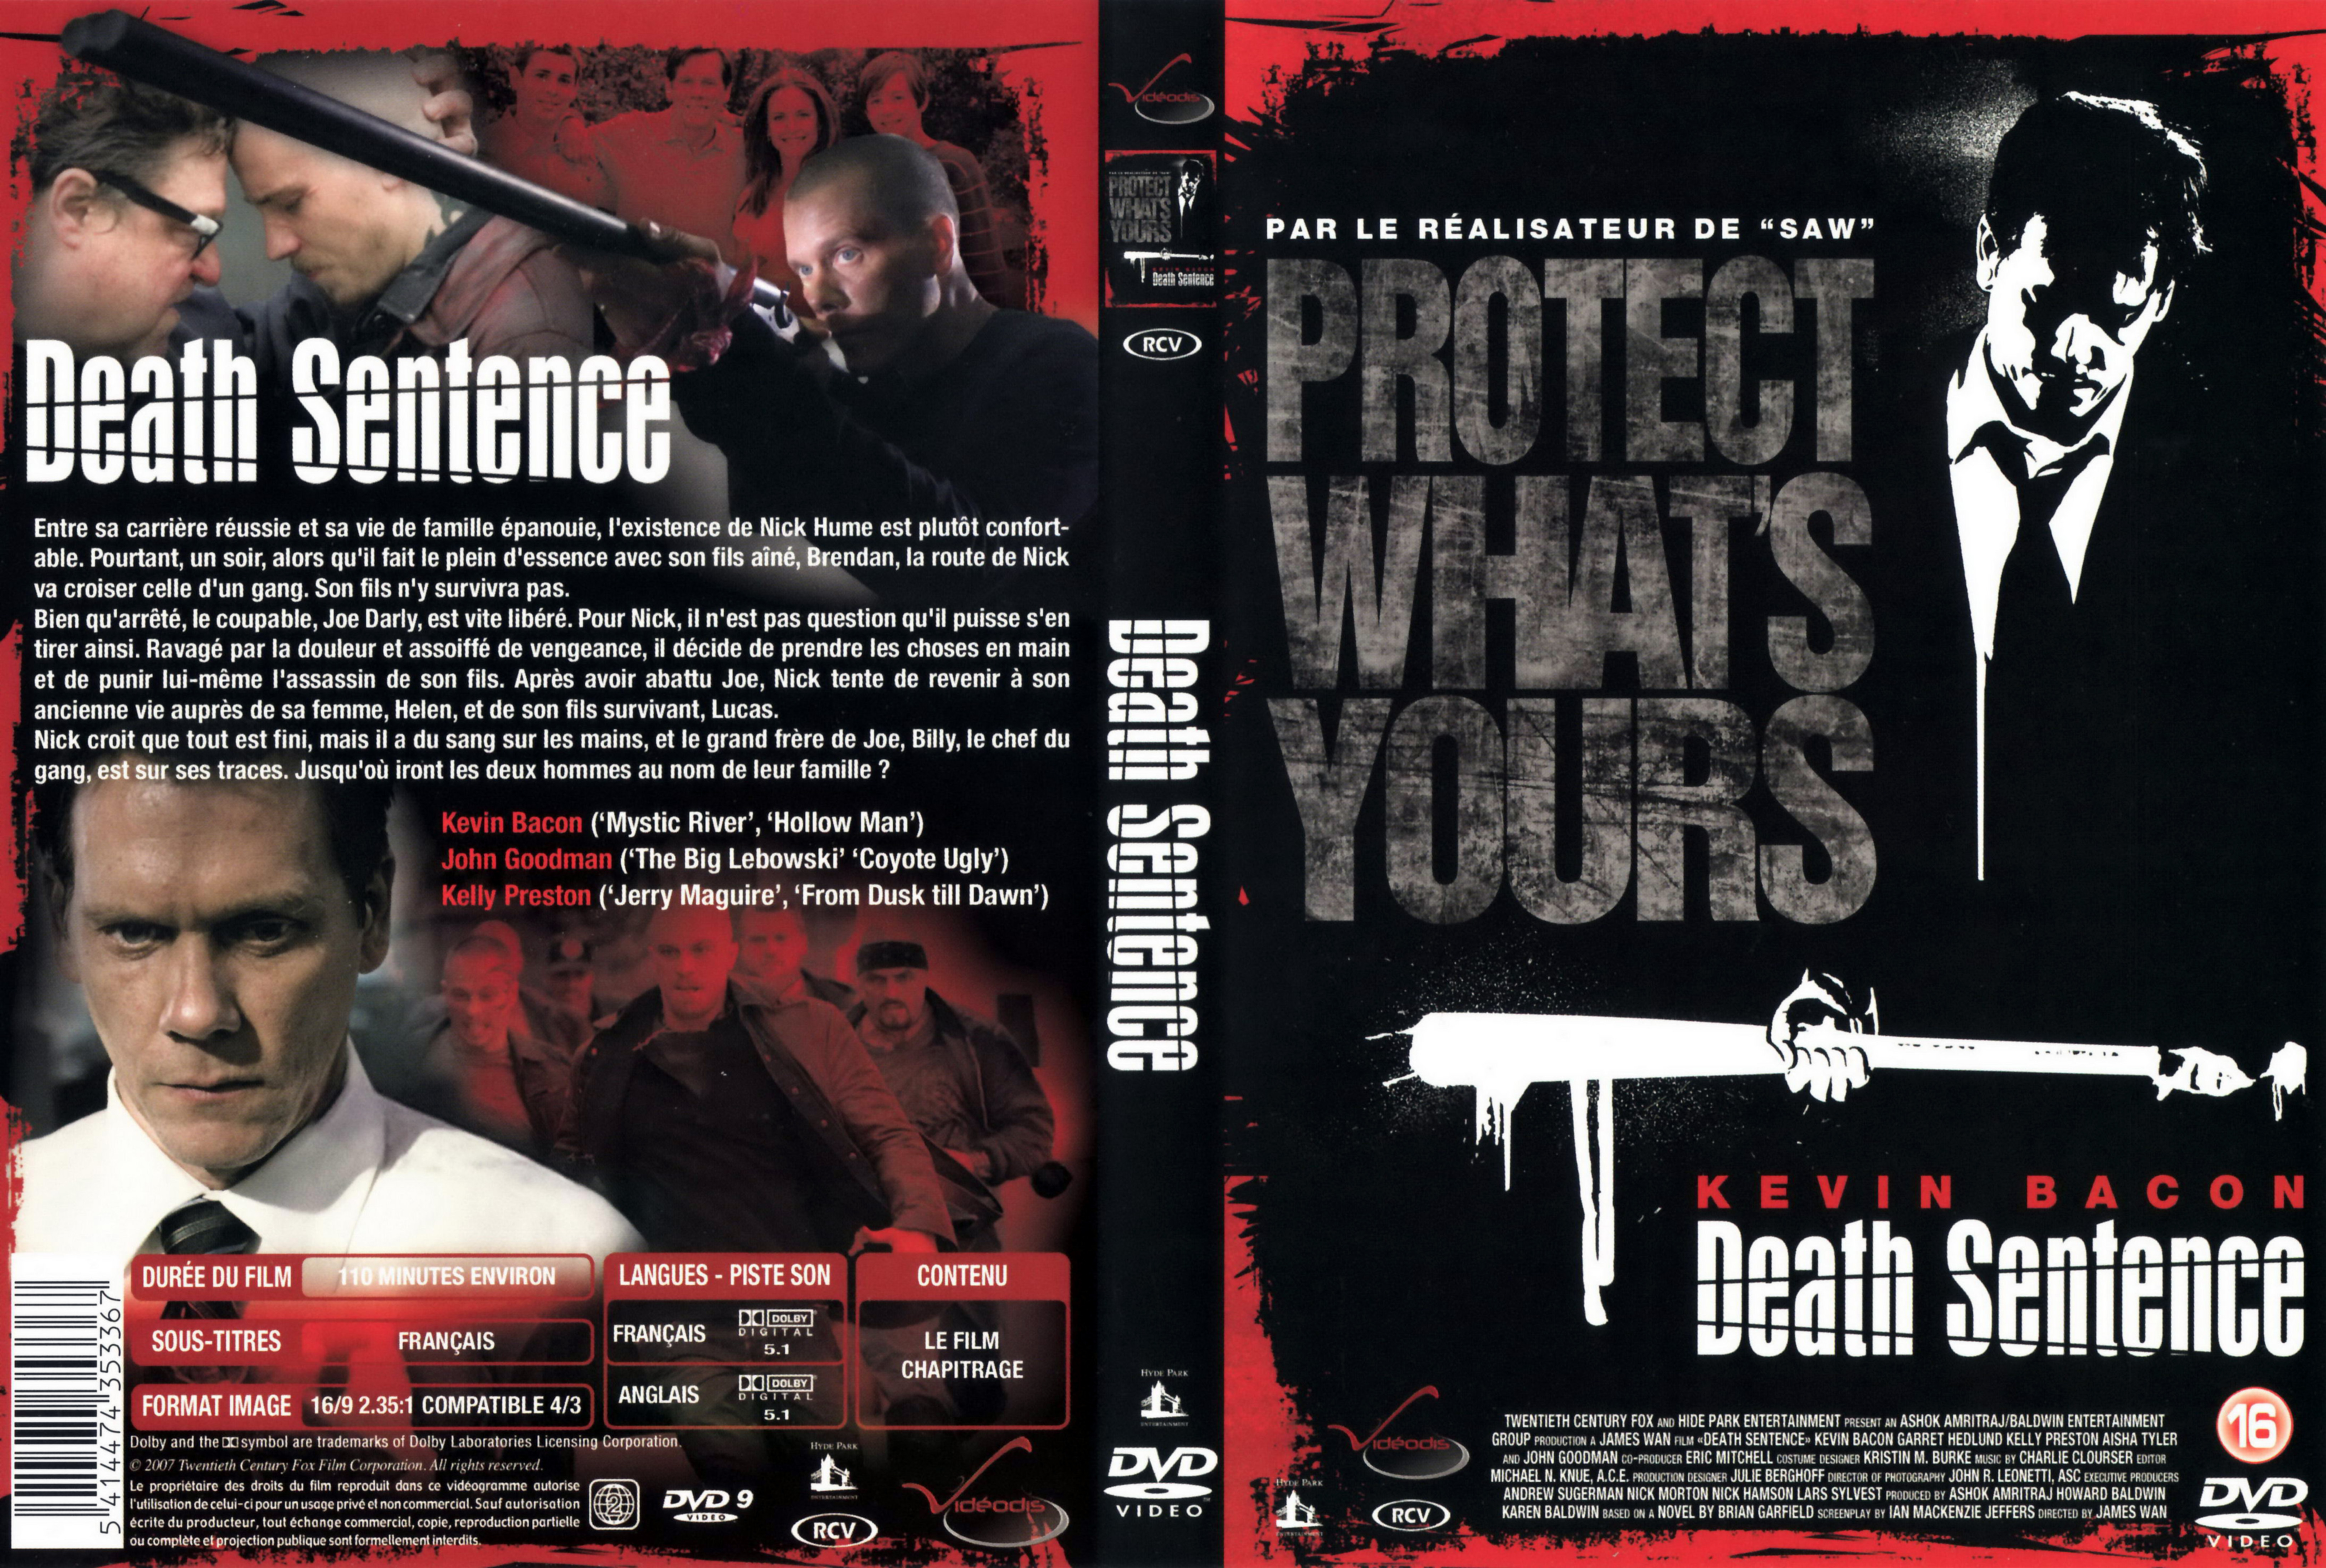 Jaquette DVD Death sentence v2